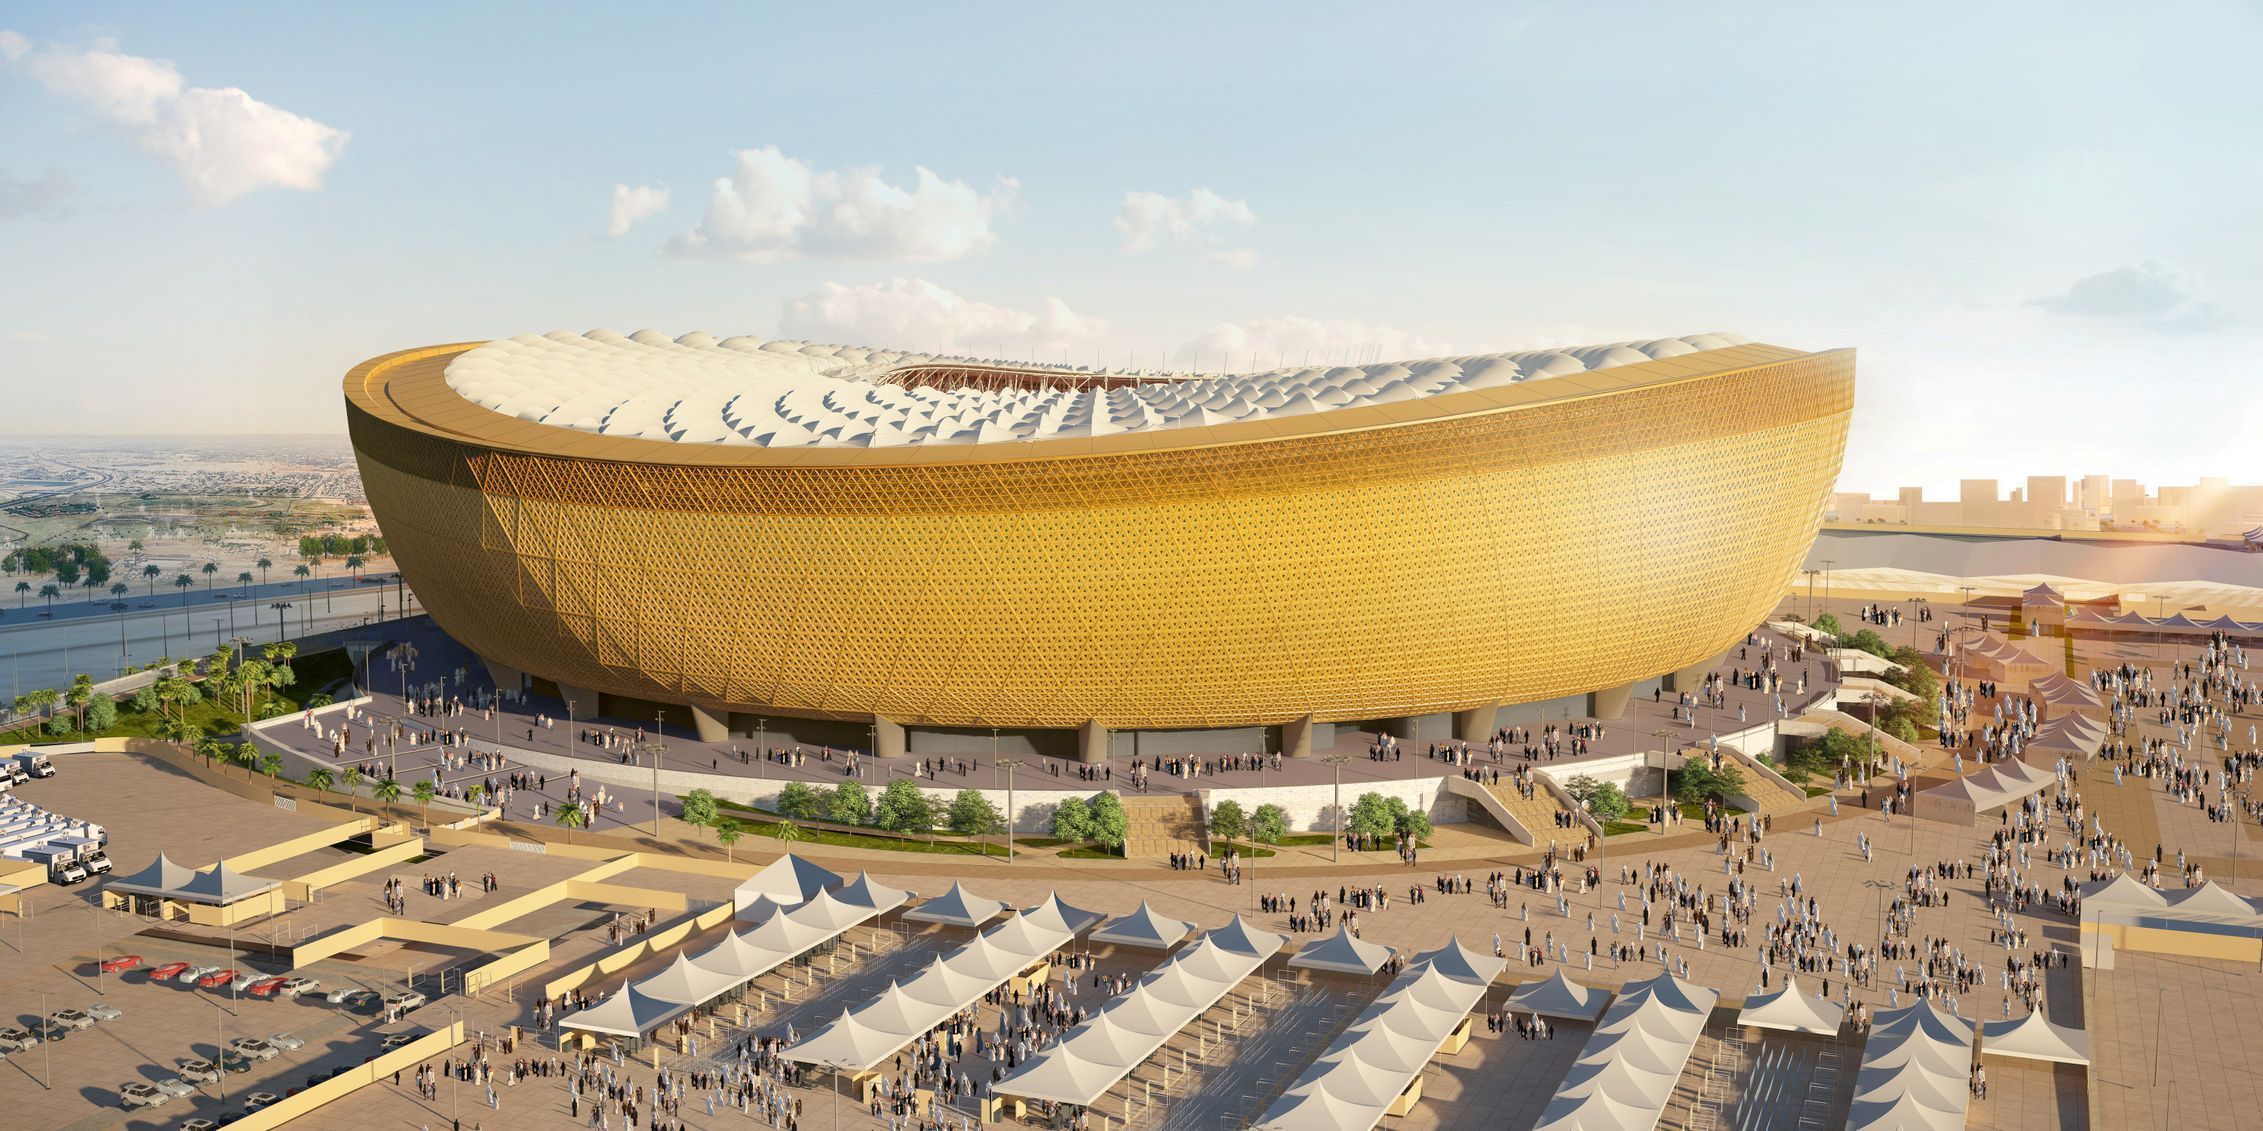 Takto by měl vypadat stadion Lusail, kde by se mělo v roce 2022 hrát finále MS